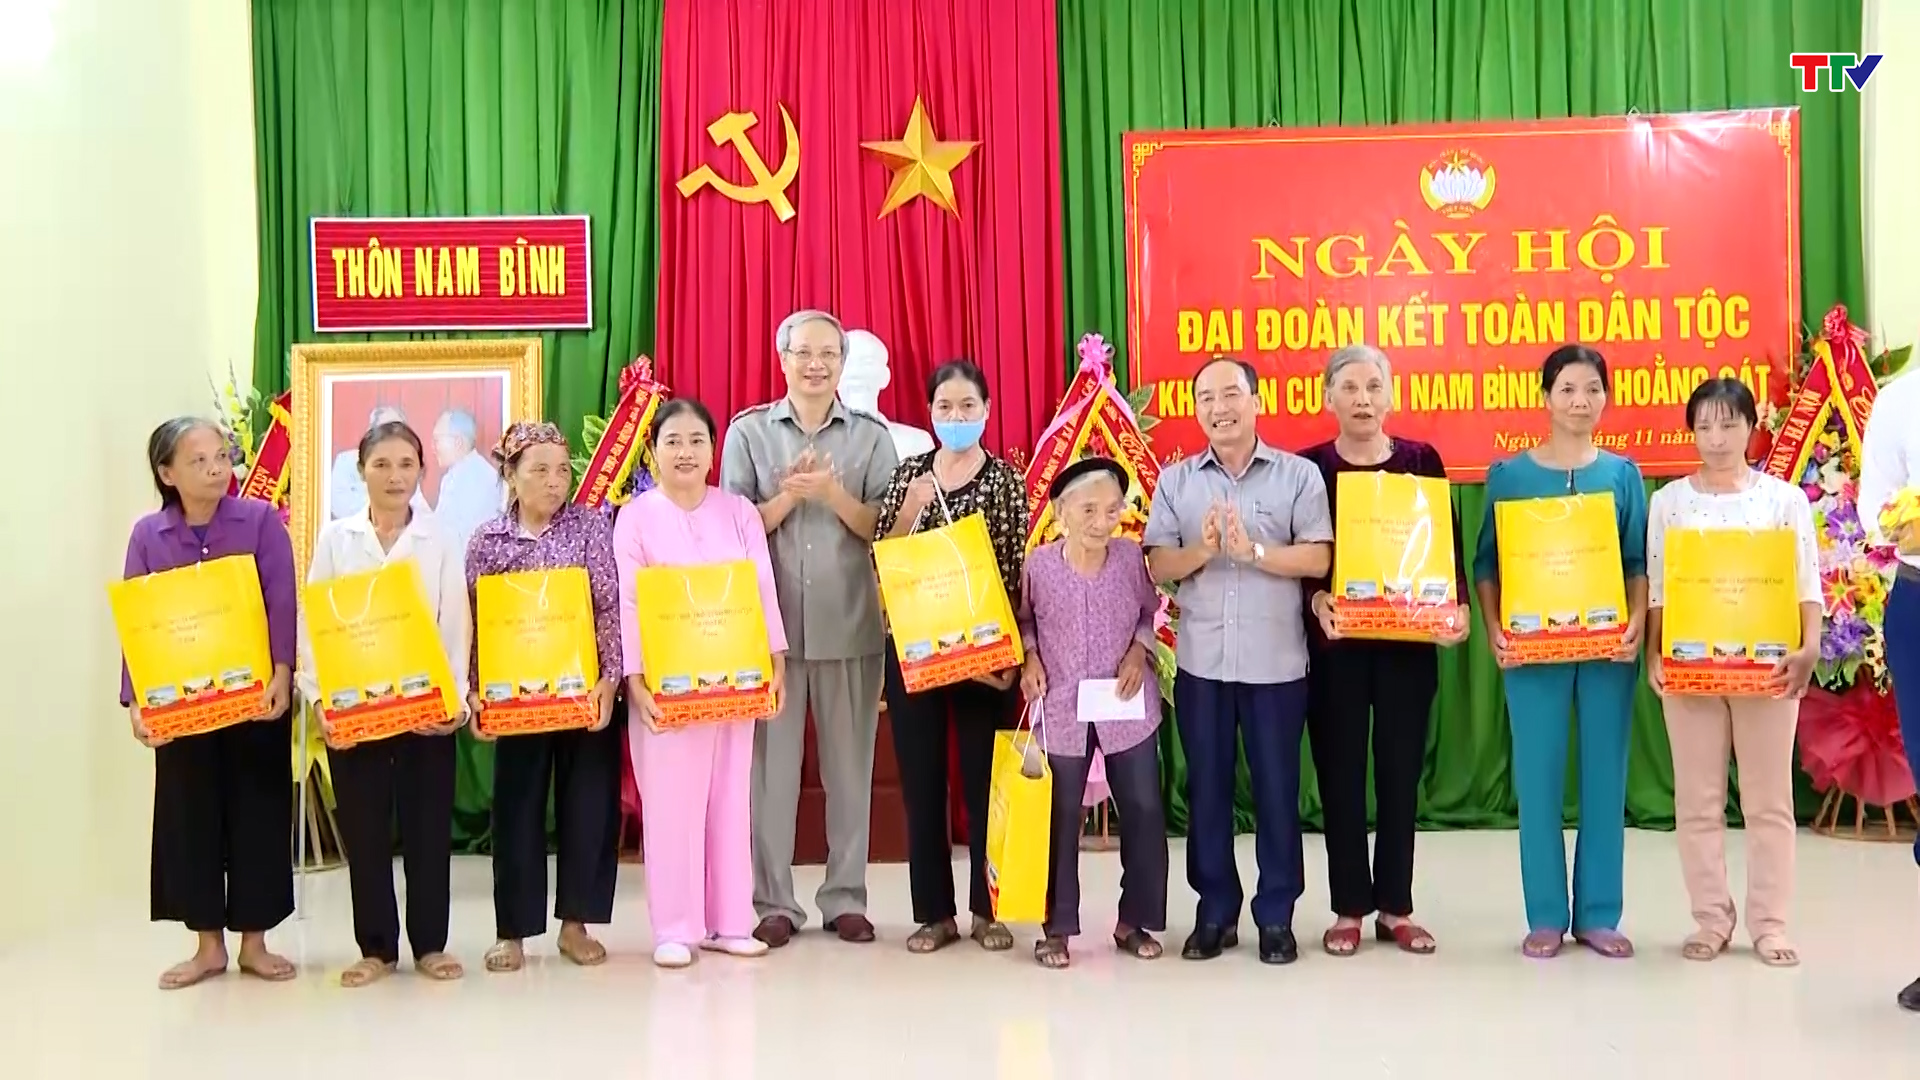 Ngày hội Đại đoàn kết toàn dân tộc thôn Nam Bình, xã Hoằng Cát, huyện Hoằng Hoá - Ảnh 4.